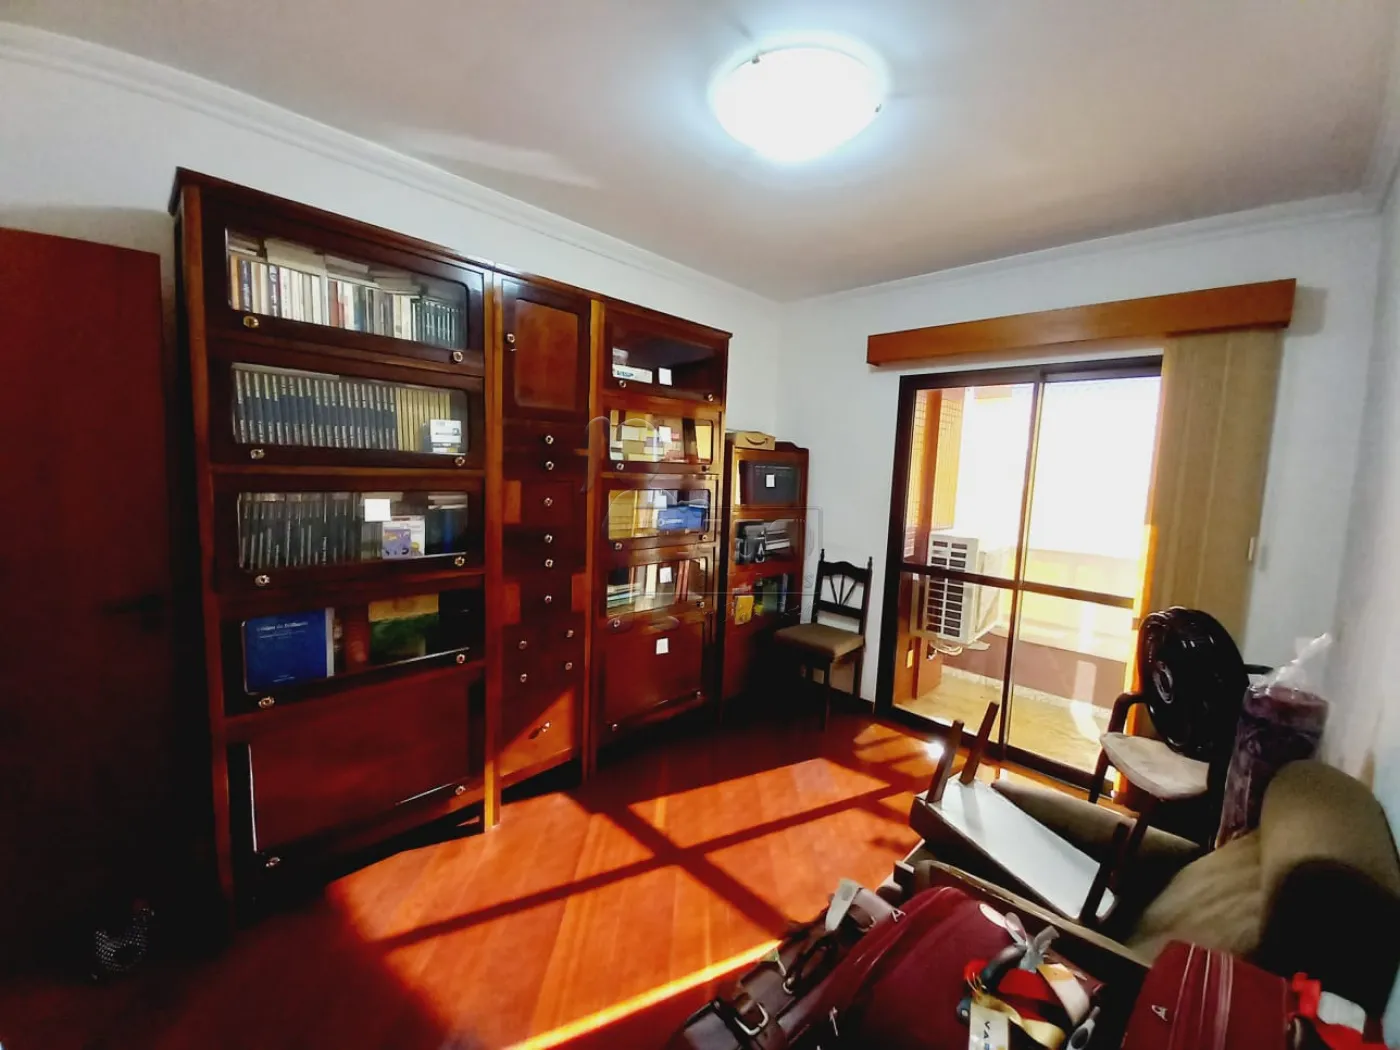 Comprar Apartamentos / Padrão em Ribeirão Preto R$ 750.000,00 - Foto 11